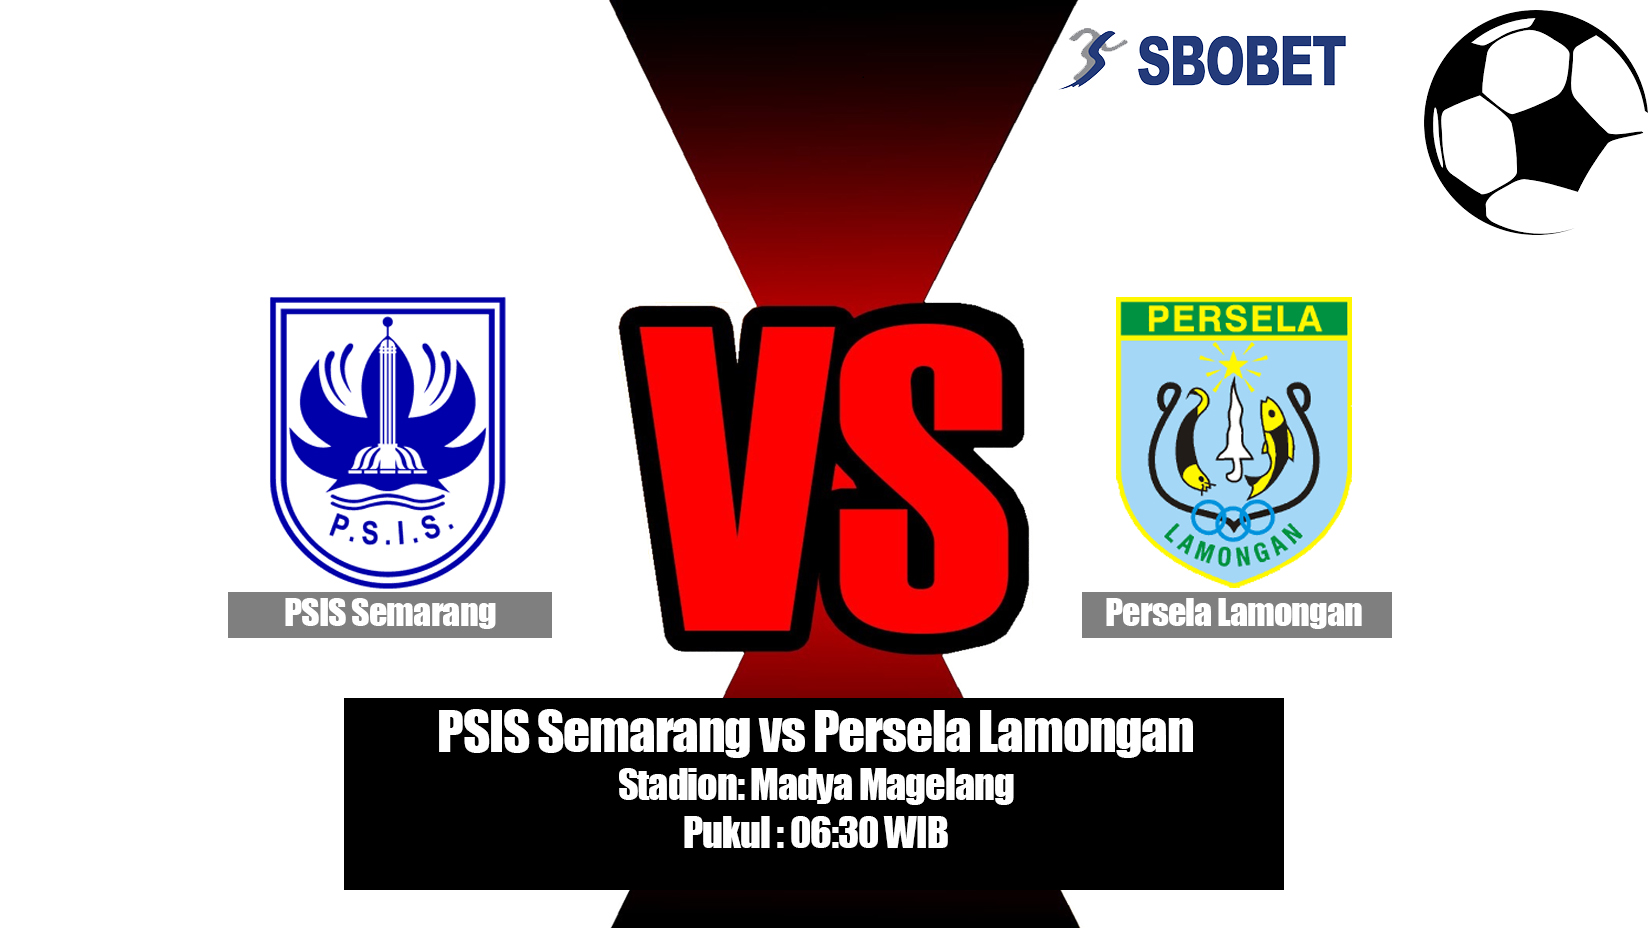 Prediksi Bola PSIS Semarang vs Persela Lamongan 7 Juli 2019